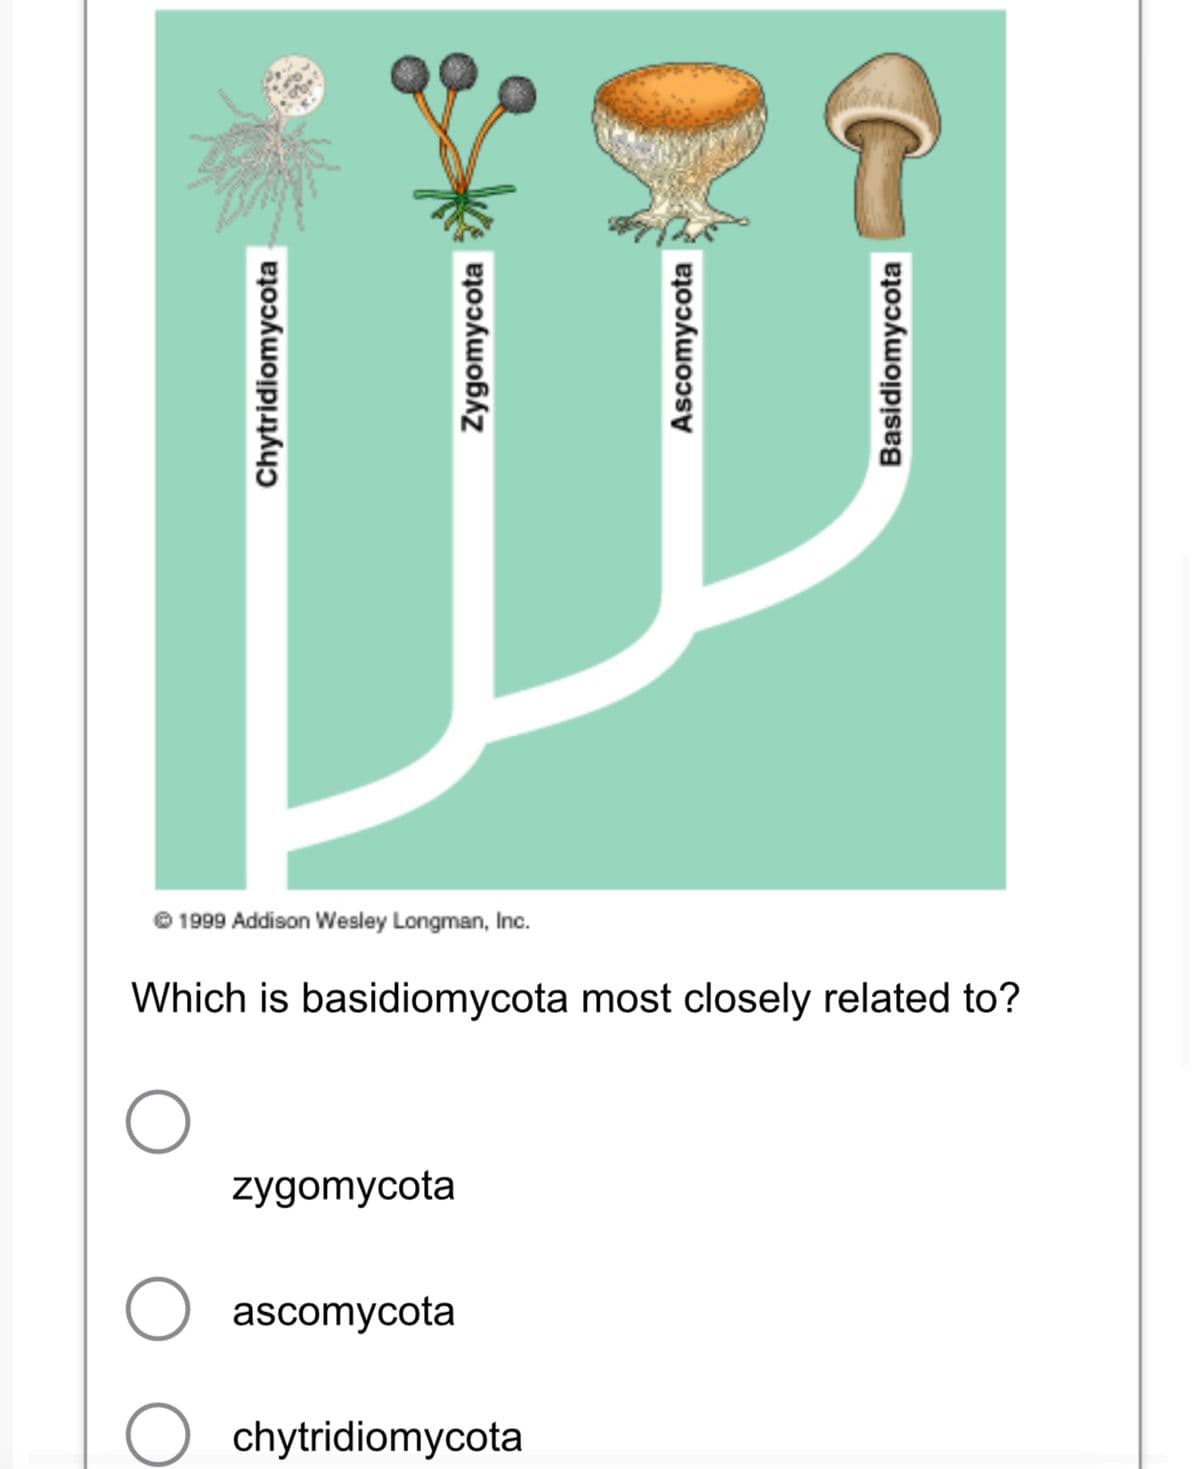 1
O
Chytridiomycota
zygomycota
Zygomycota
1999 Addison Wesley Longman, Inc.
Which is basidiomycota most closely related to?
ascomycota
Ascomycota
chytridiomycota
Basidiomycota